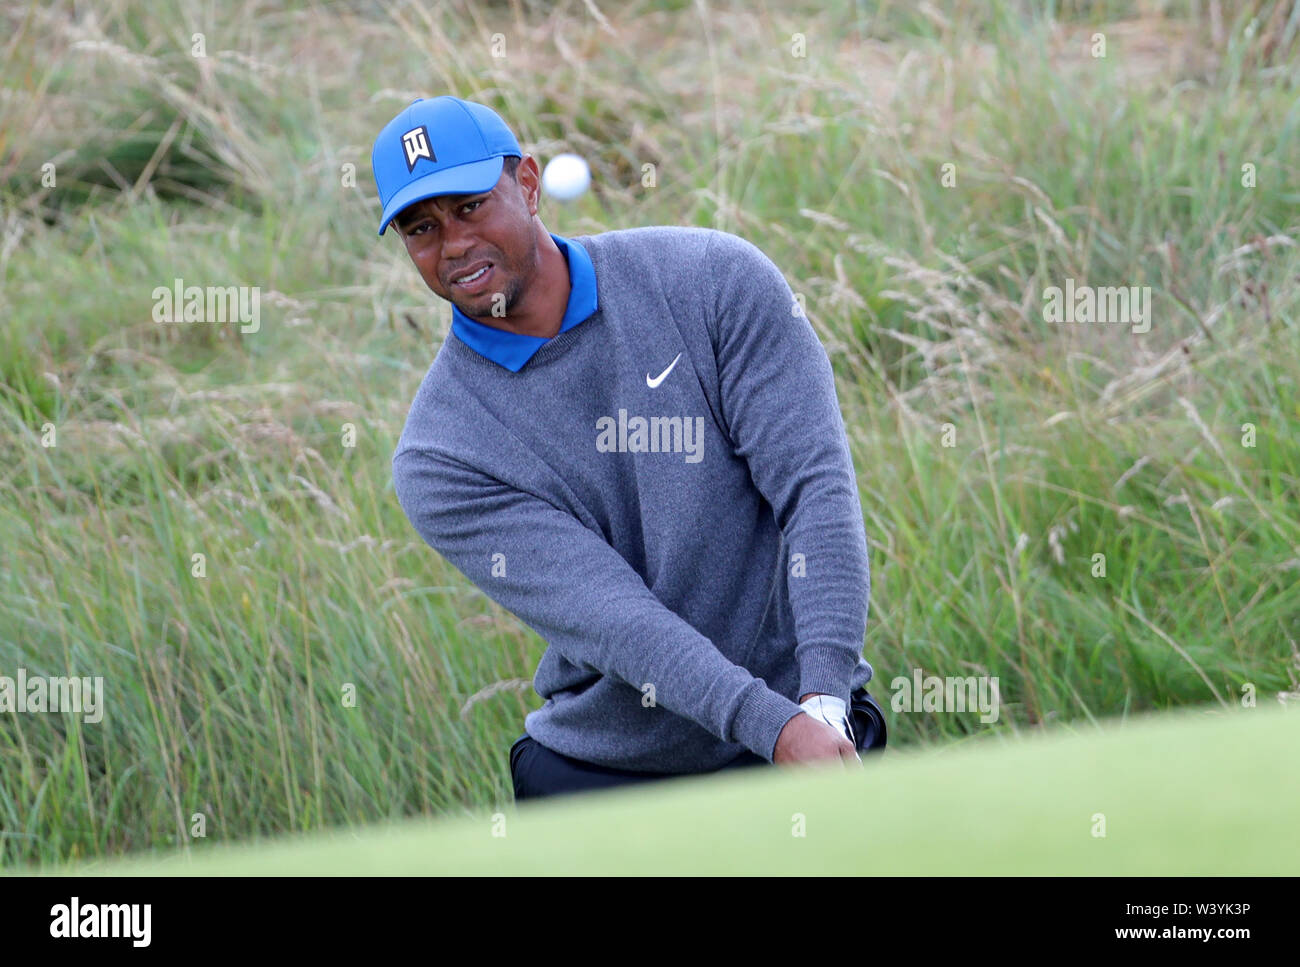 USA's Tiger Woods jetons de la rough sur le 6ème au cours de la première journée du championnat ouvert en 2019 au Club de golf Royal Portrush. Banque D'Images